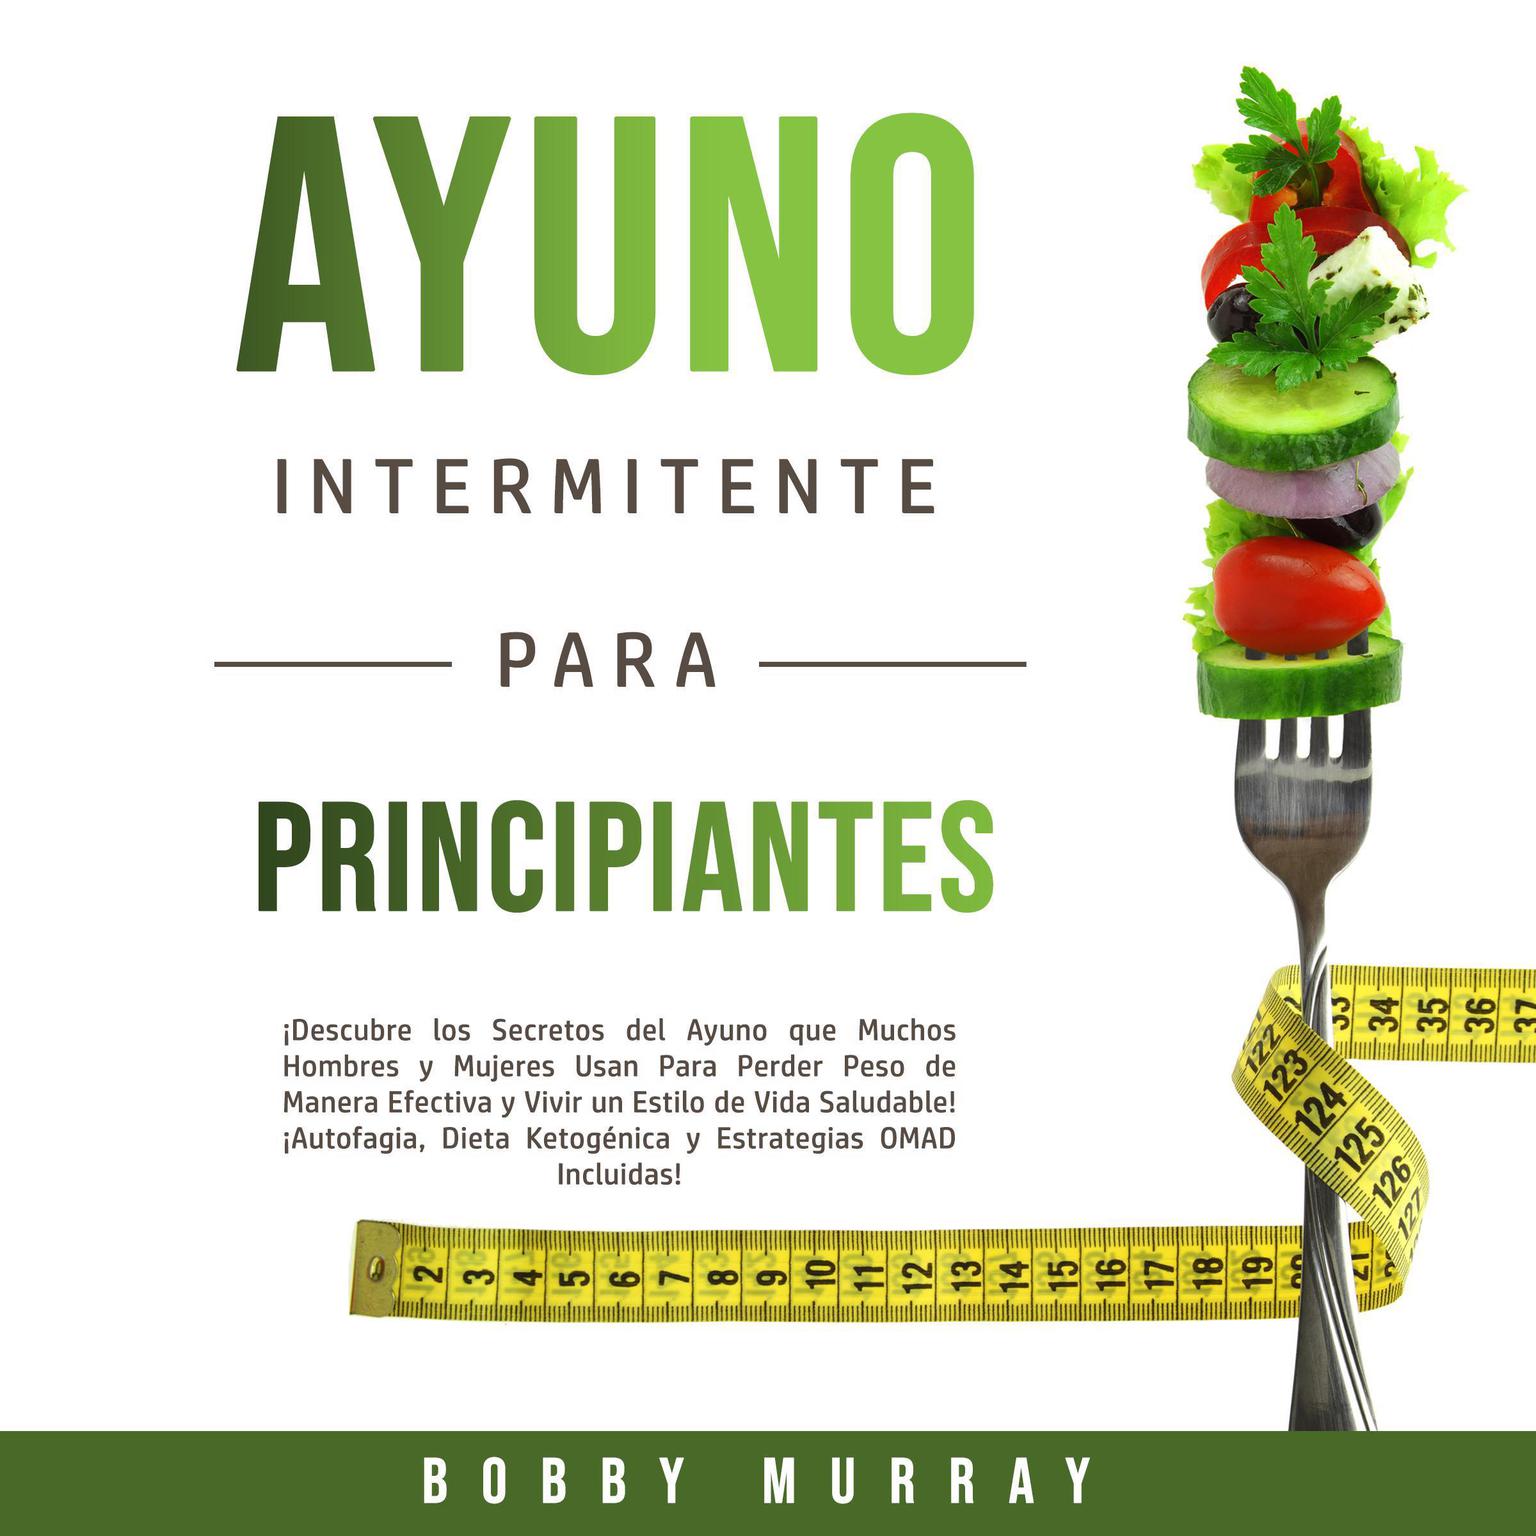 Ayuno Intermitente Para Principiantes Audiobook, by Bobby Murray